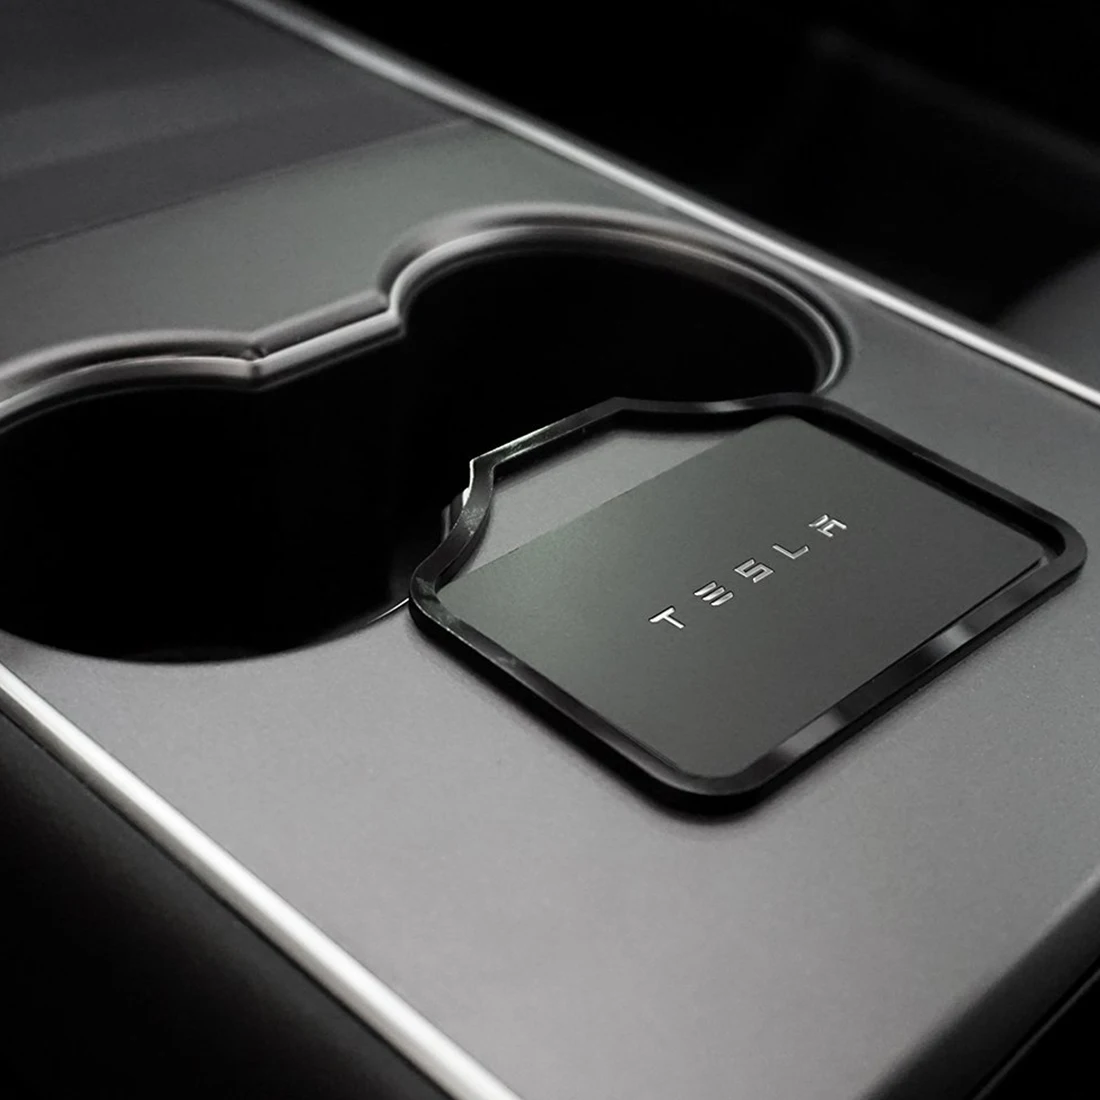 Ključ Trim Okvir Imetnika Avto Zagon Motorja Kartico Utrjevalec za Omejevanje Nalepke za Tesla Model 3 Anti-slip Kartico Zamašek Trim 2017-2020